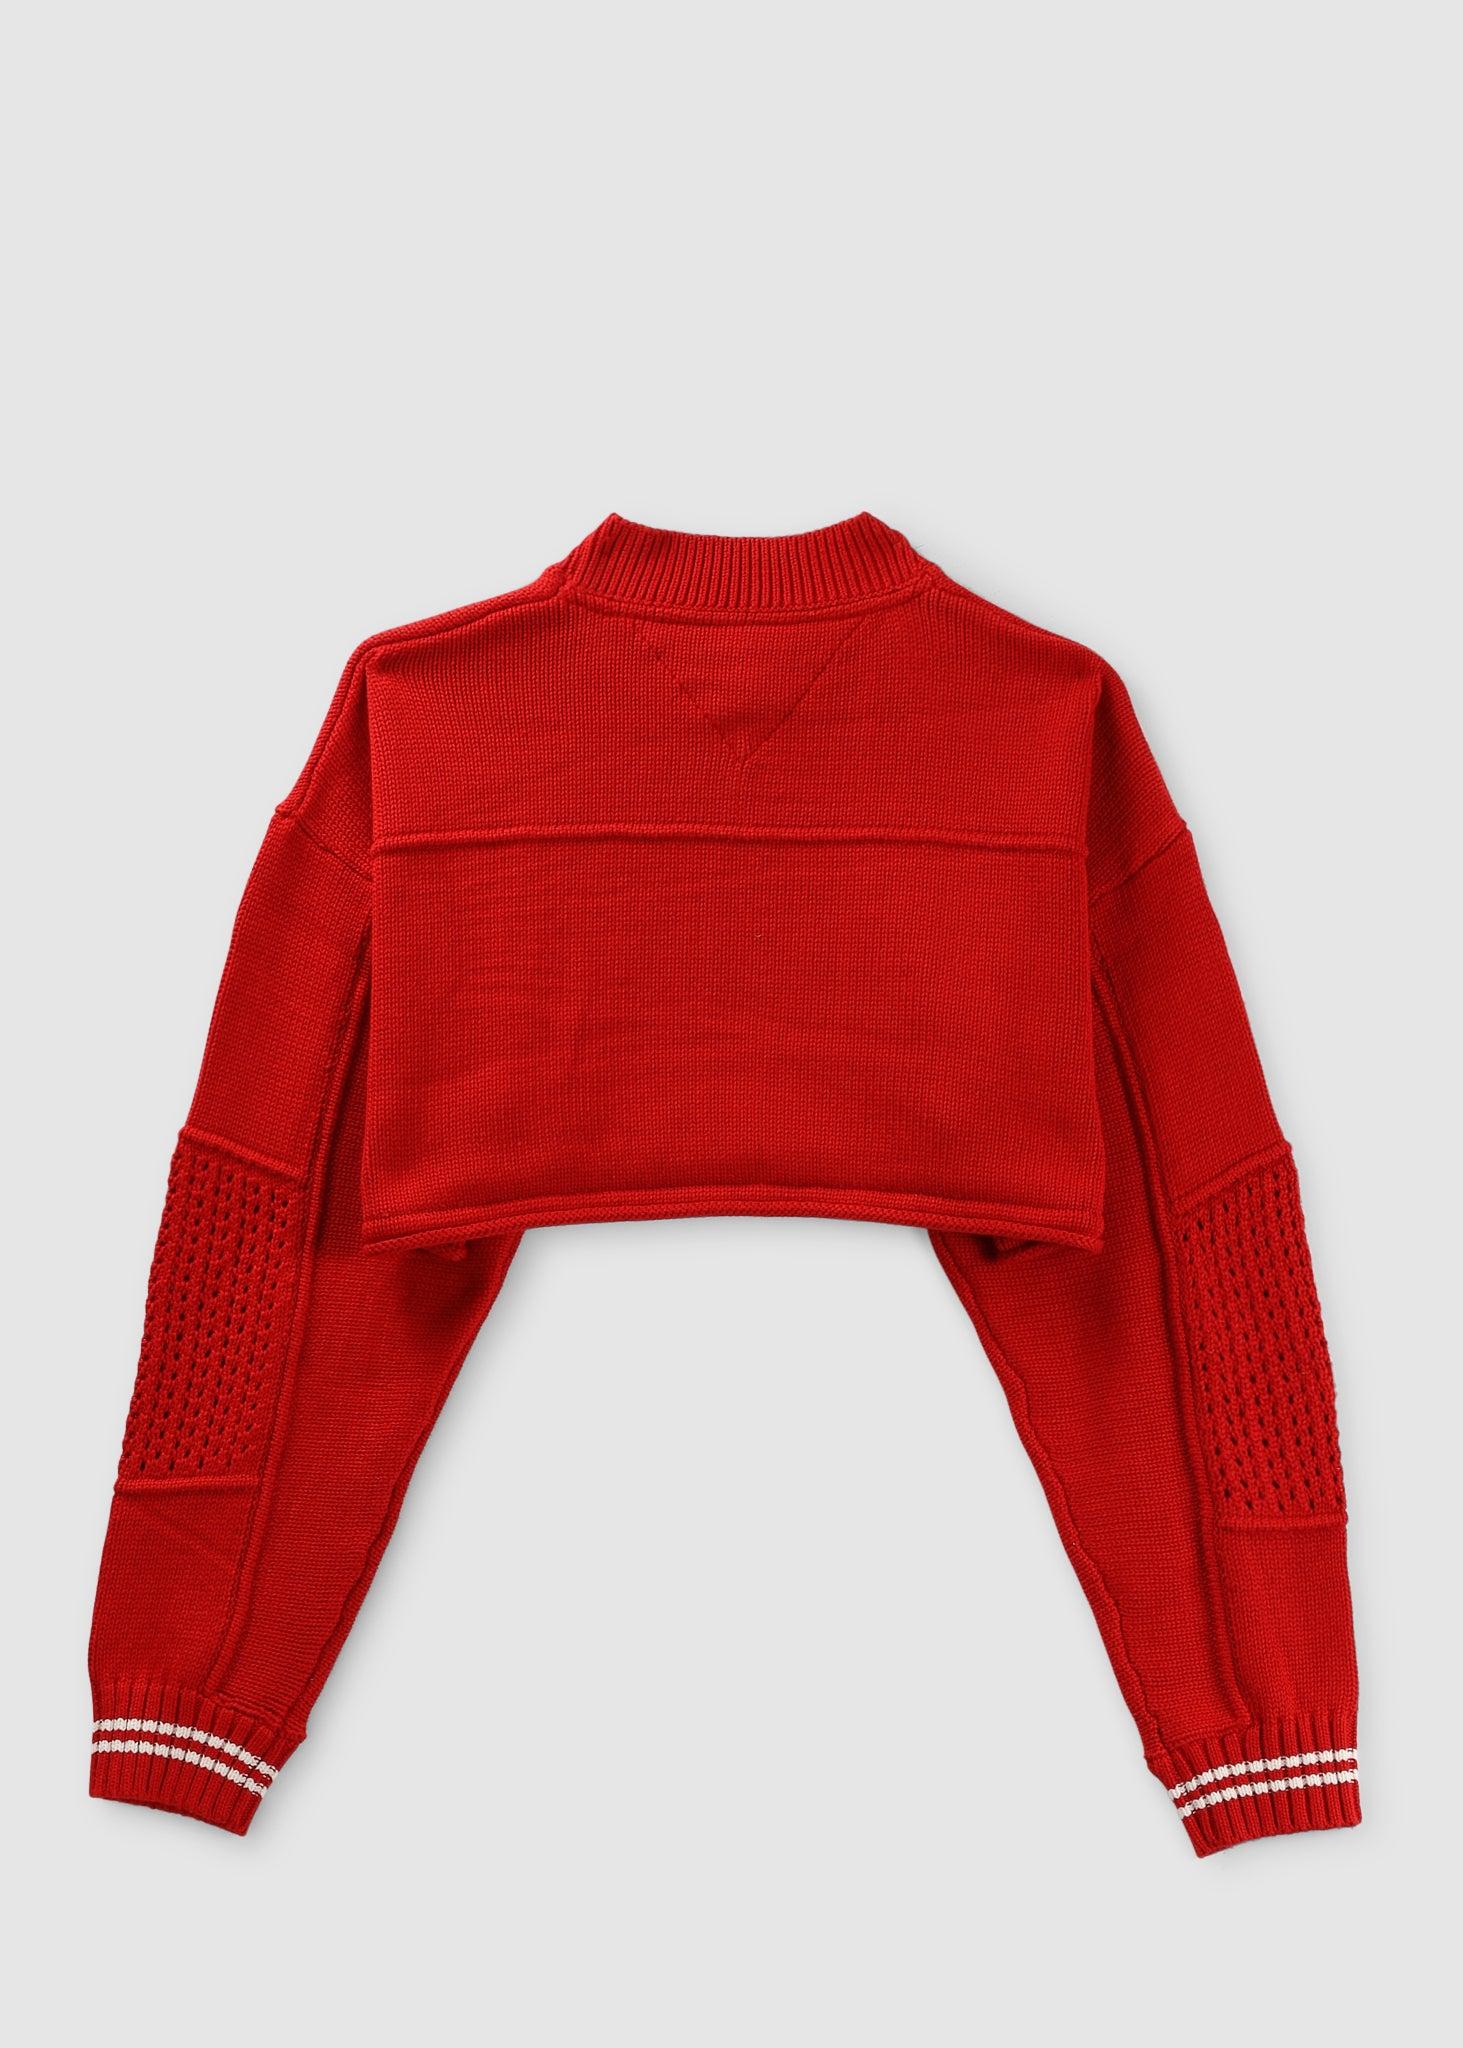 Somatisk celle Aktiv Afrika Tommy Hilfiger Super Crop 85 Sweater in Red | Lyst